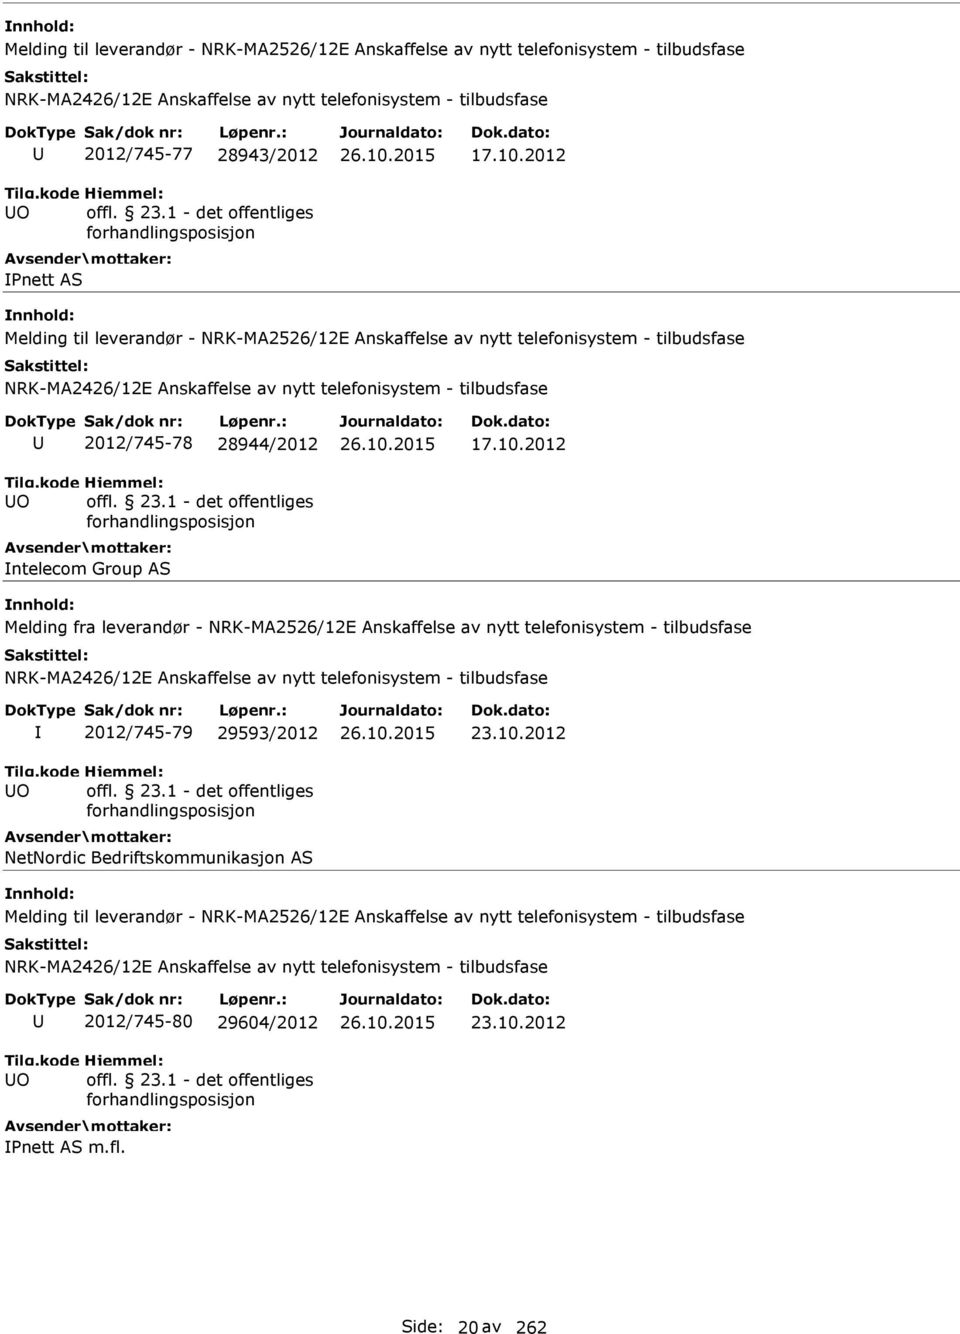 2012 Melding fra leverandør - NRK-MA2526/12E Anskaffelse av nytt telefonisystem - tilbudsfase O 2012/745-79 29593/2012 NetNordic